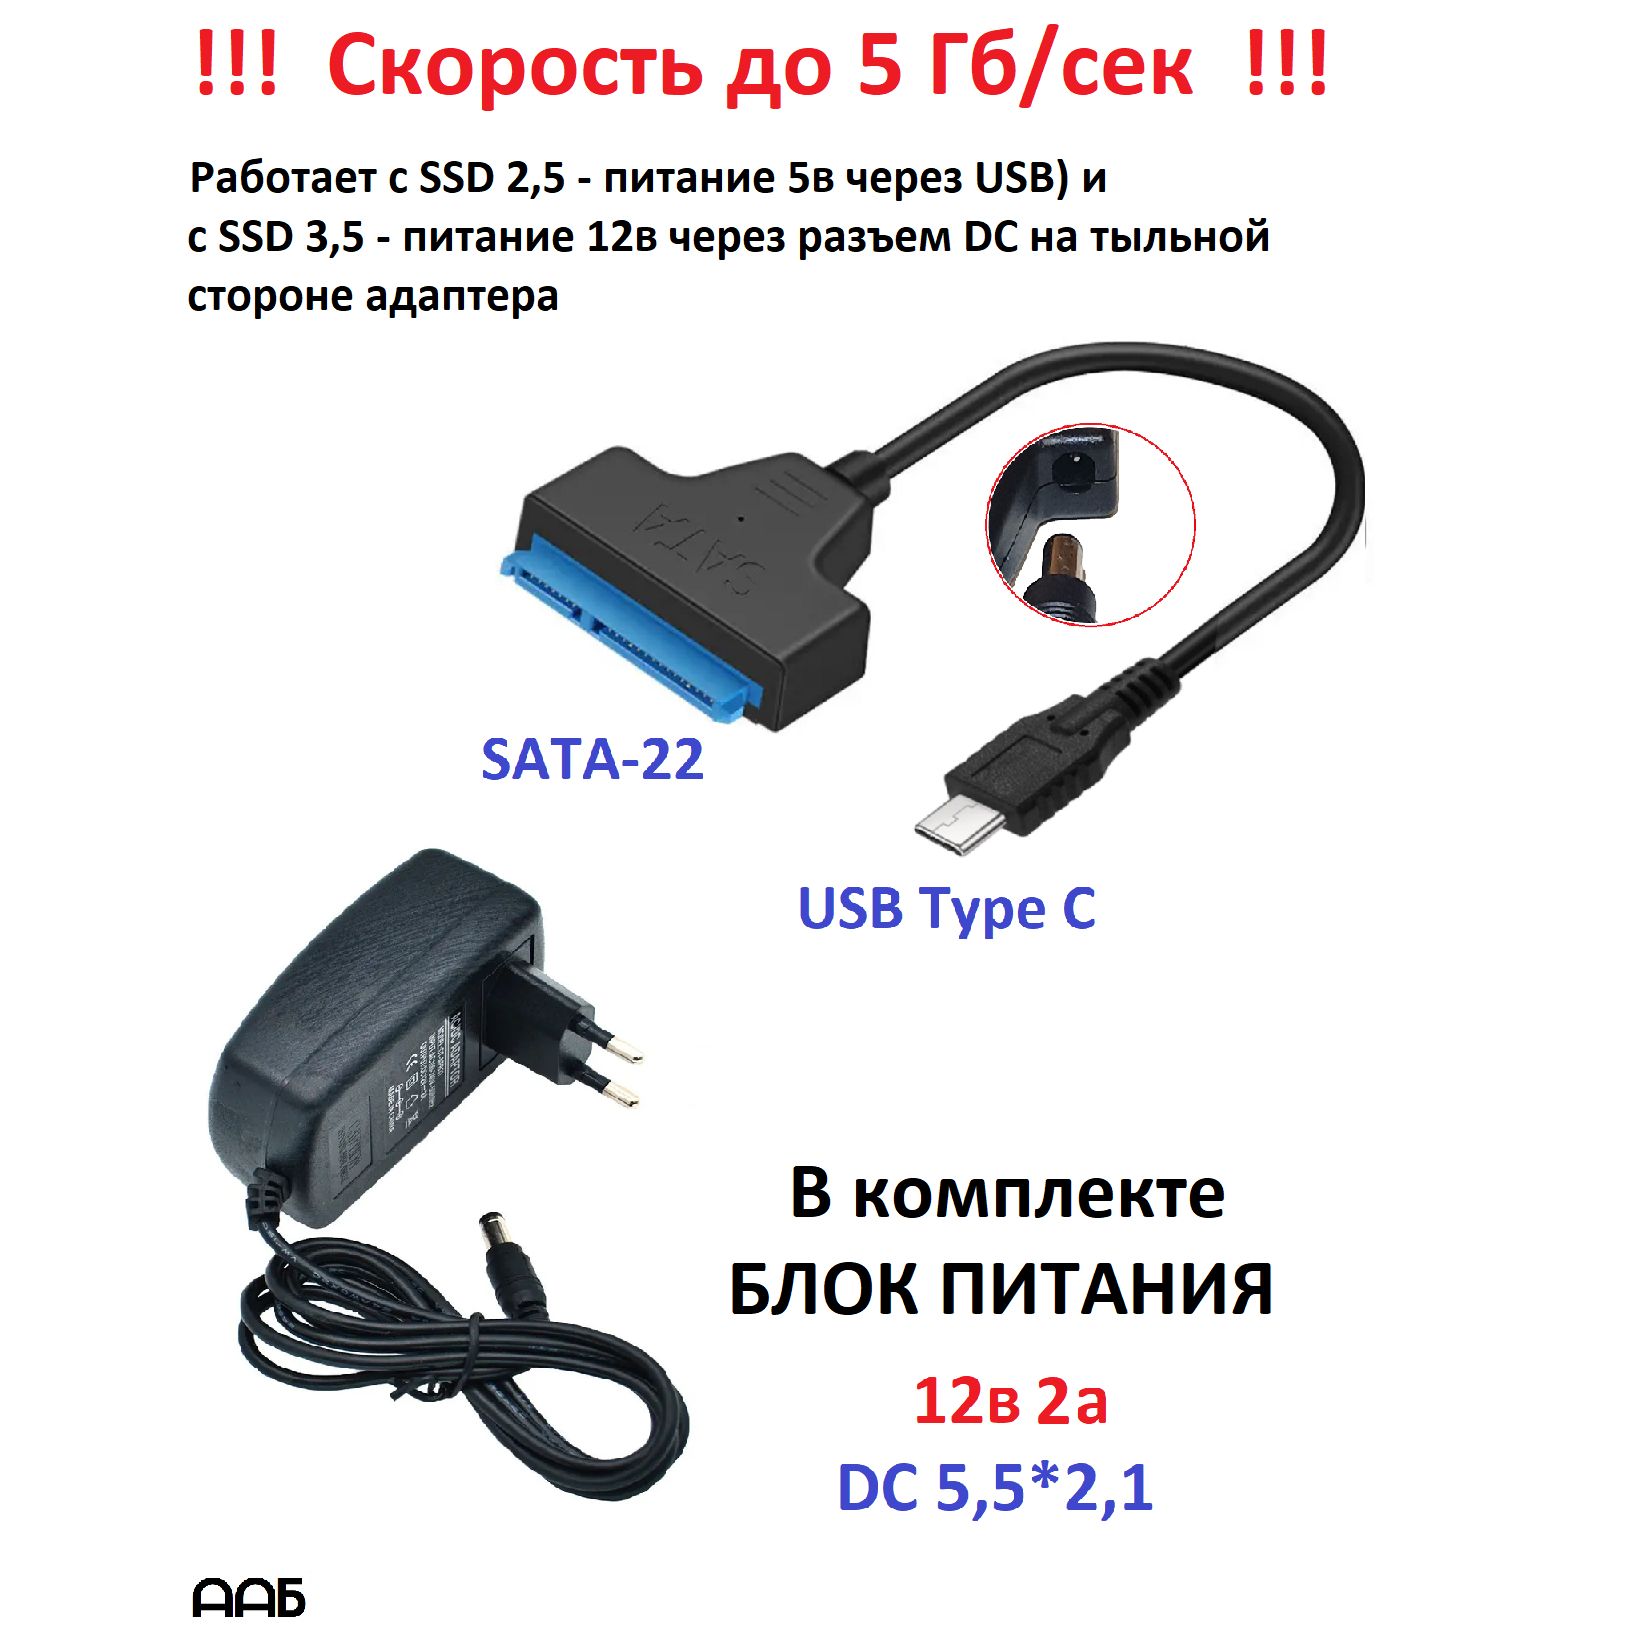 КомплектадаптерSATA2,5/3,5-USBTypeCиблокпитания12в2а(12v2a)